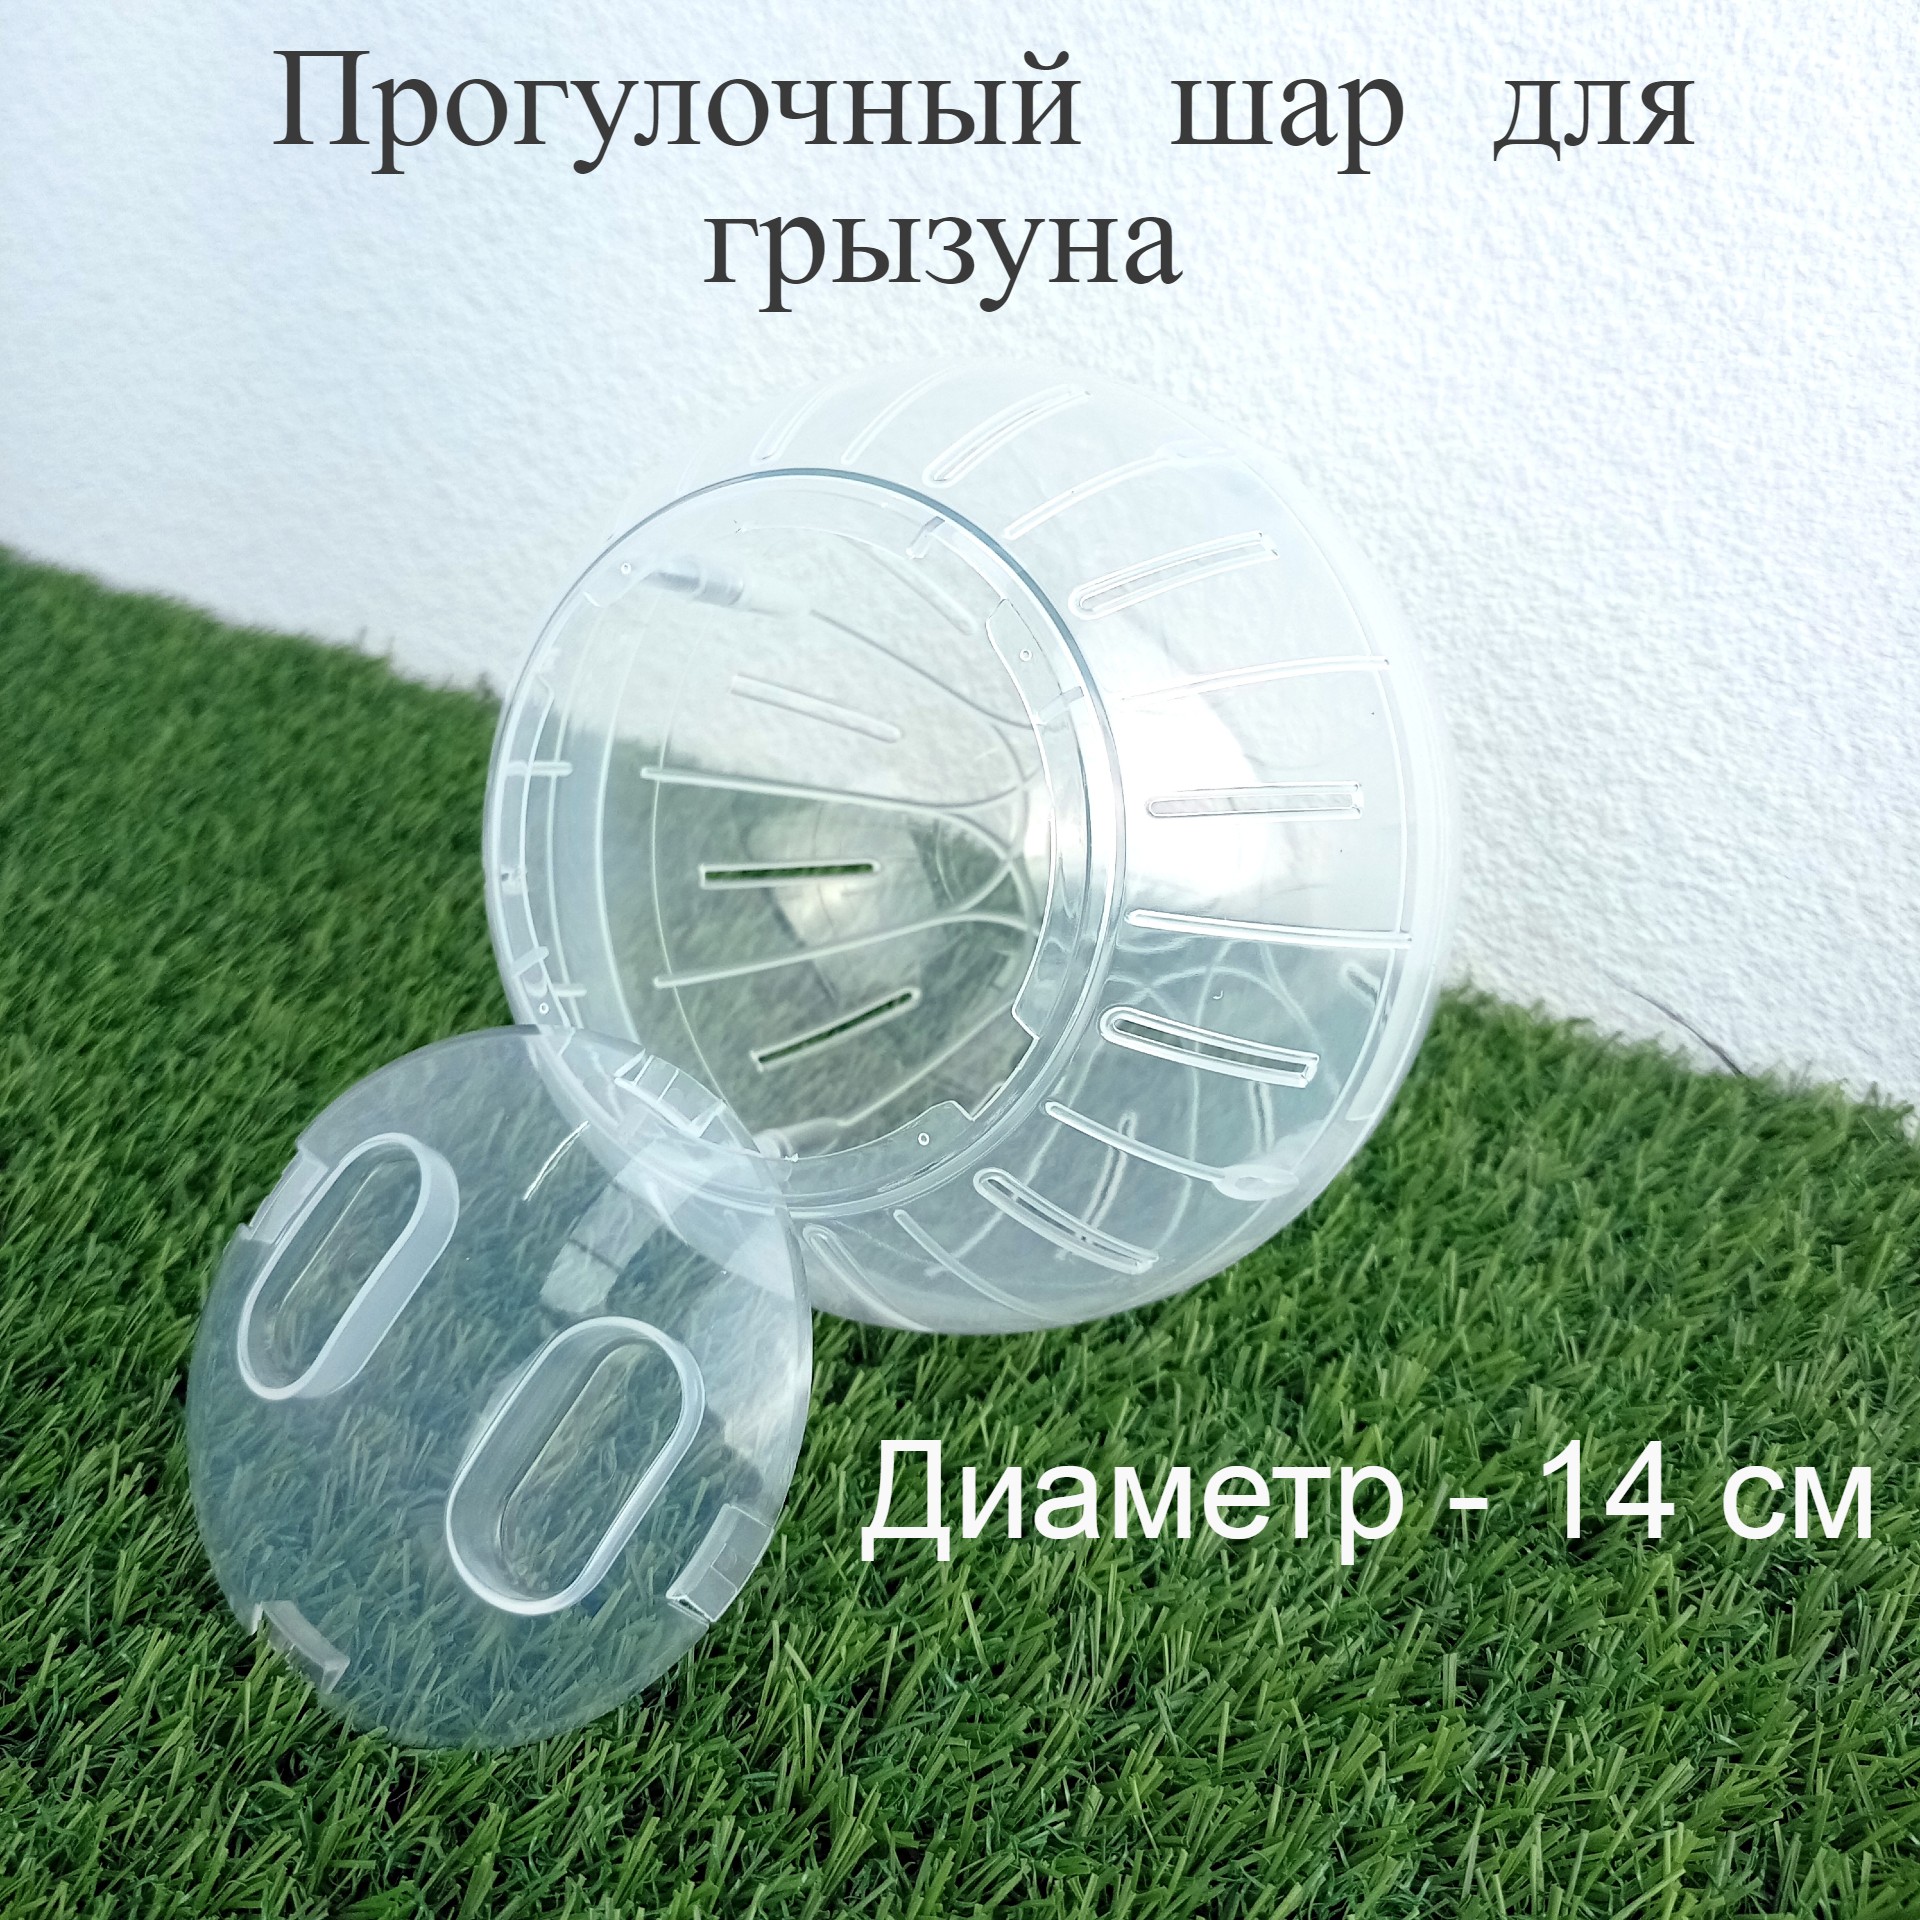 Прогулочный шар для грызунов Позитиffчик прозрачный, пластик, 14 см